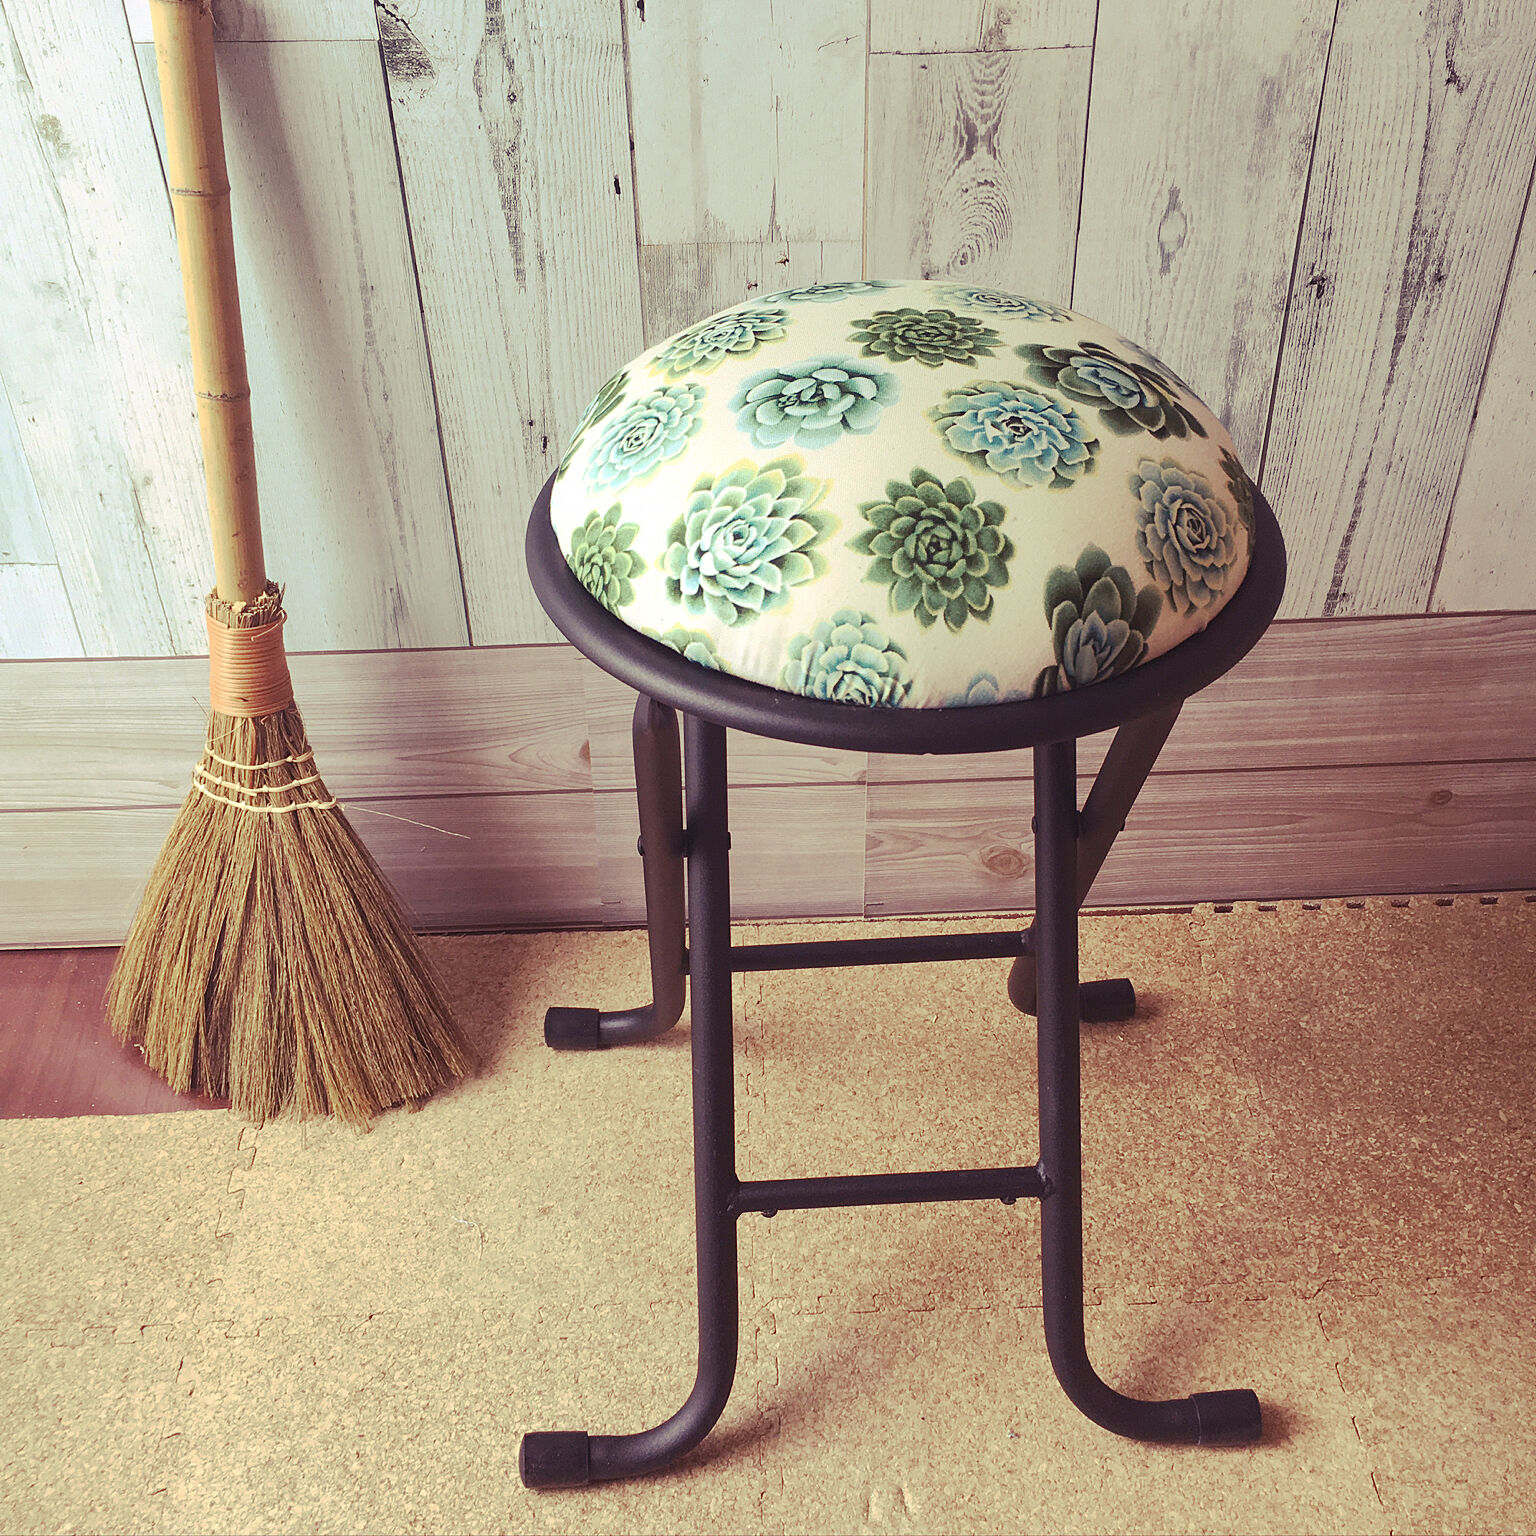 世界にひとつの手作り椅子♡DIYのワザが光る本格チェア | RoomClip mag